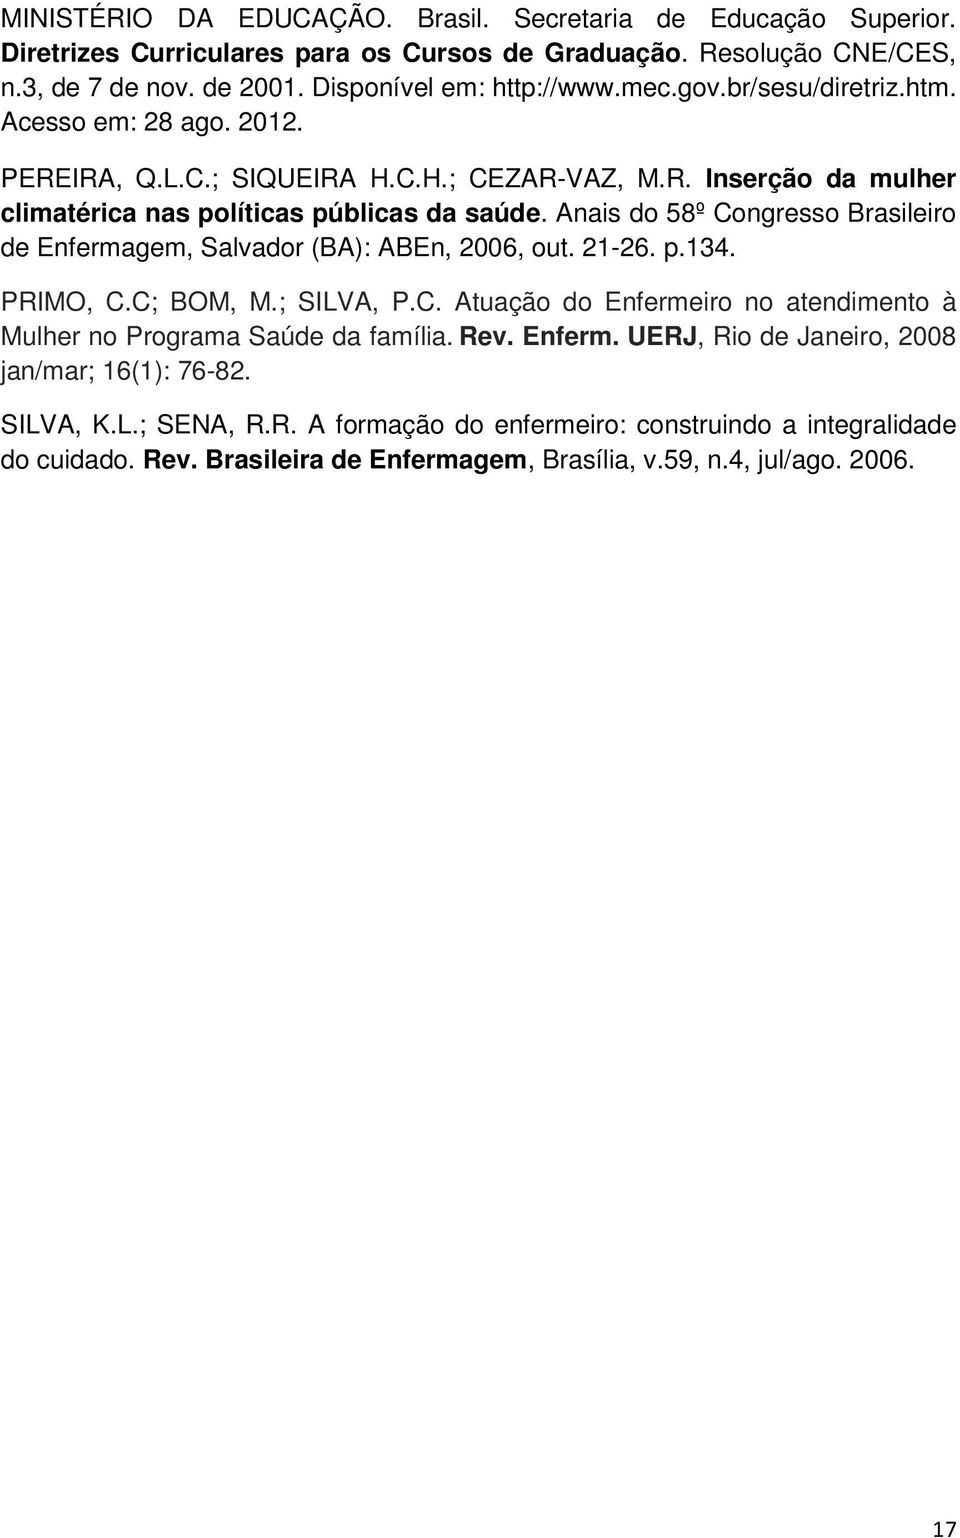 Anais do 58º Congresso Brasileiro de Enfermagem, Salvador (BA): ABEn, 2006, out. 21-26. p.134. PRIMO, C.C; BOM, M.; SILVA, P.C. Atuação do Enfermeiro no atendimento à Mulher no Programa Saúde da família.